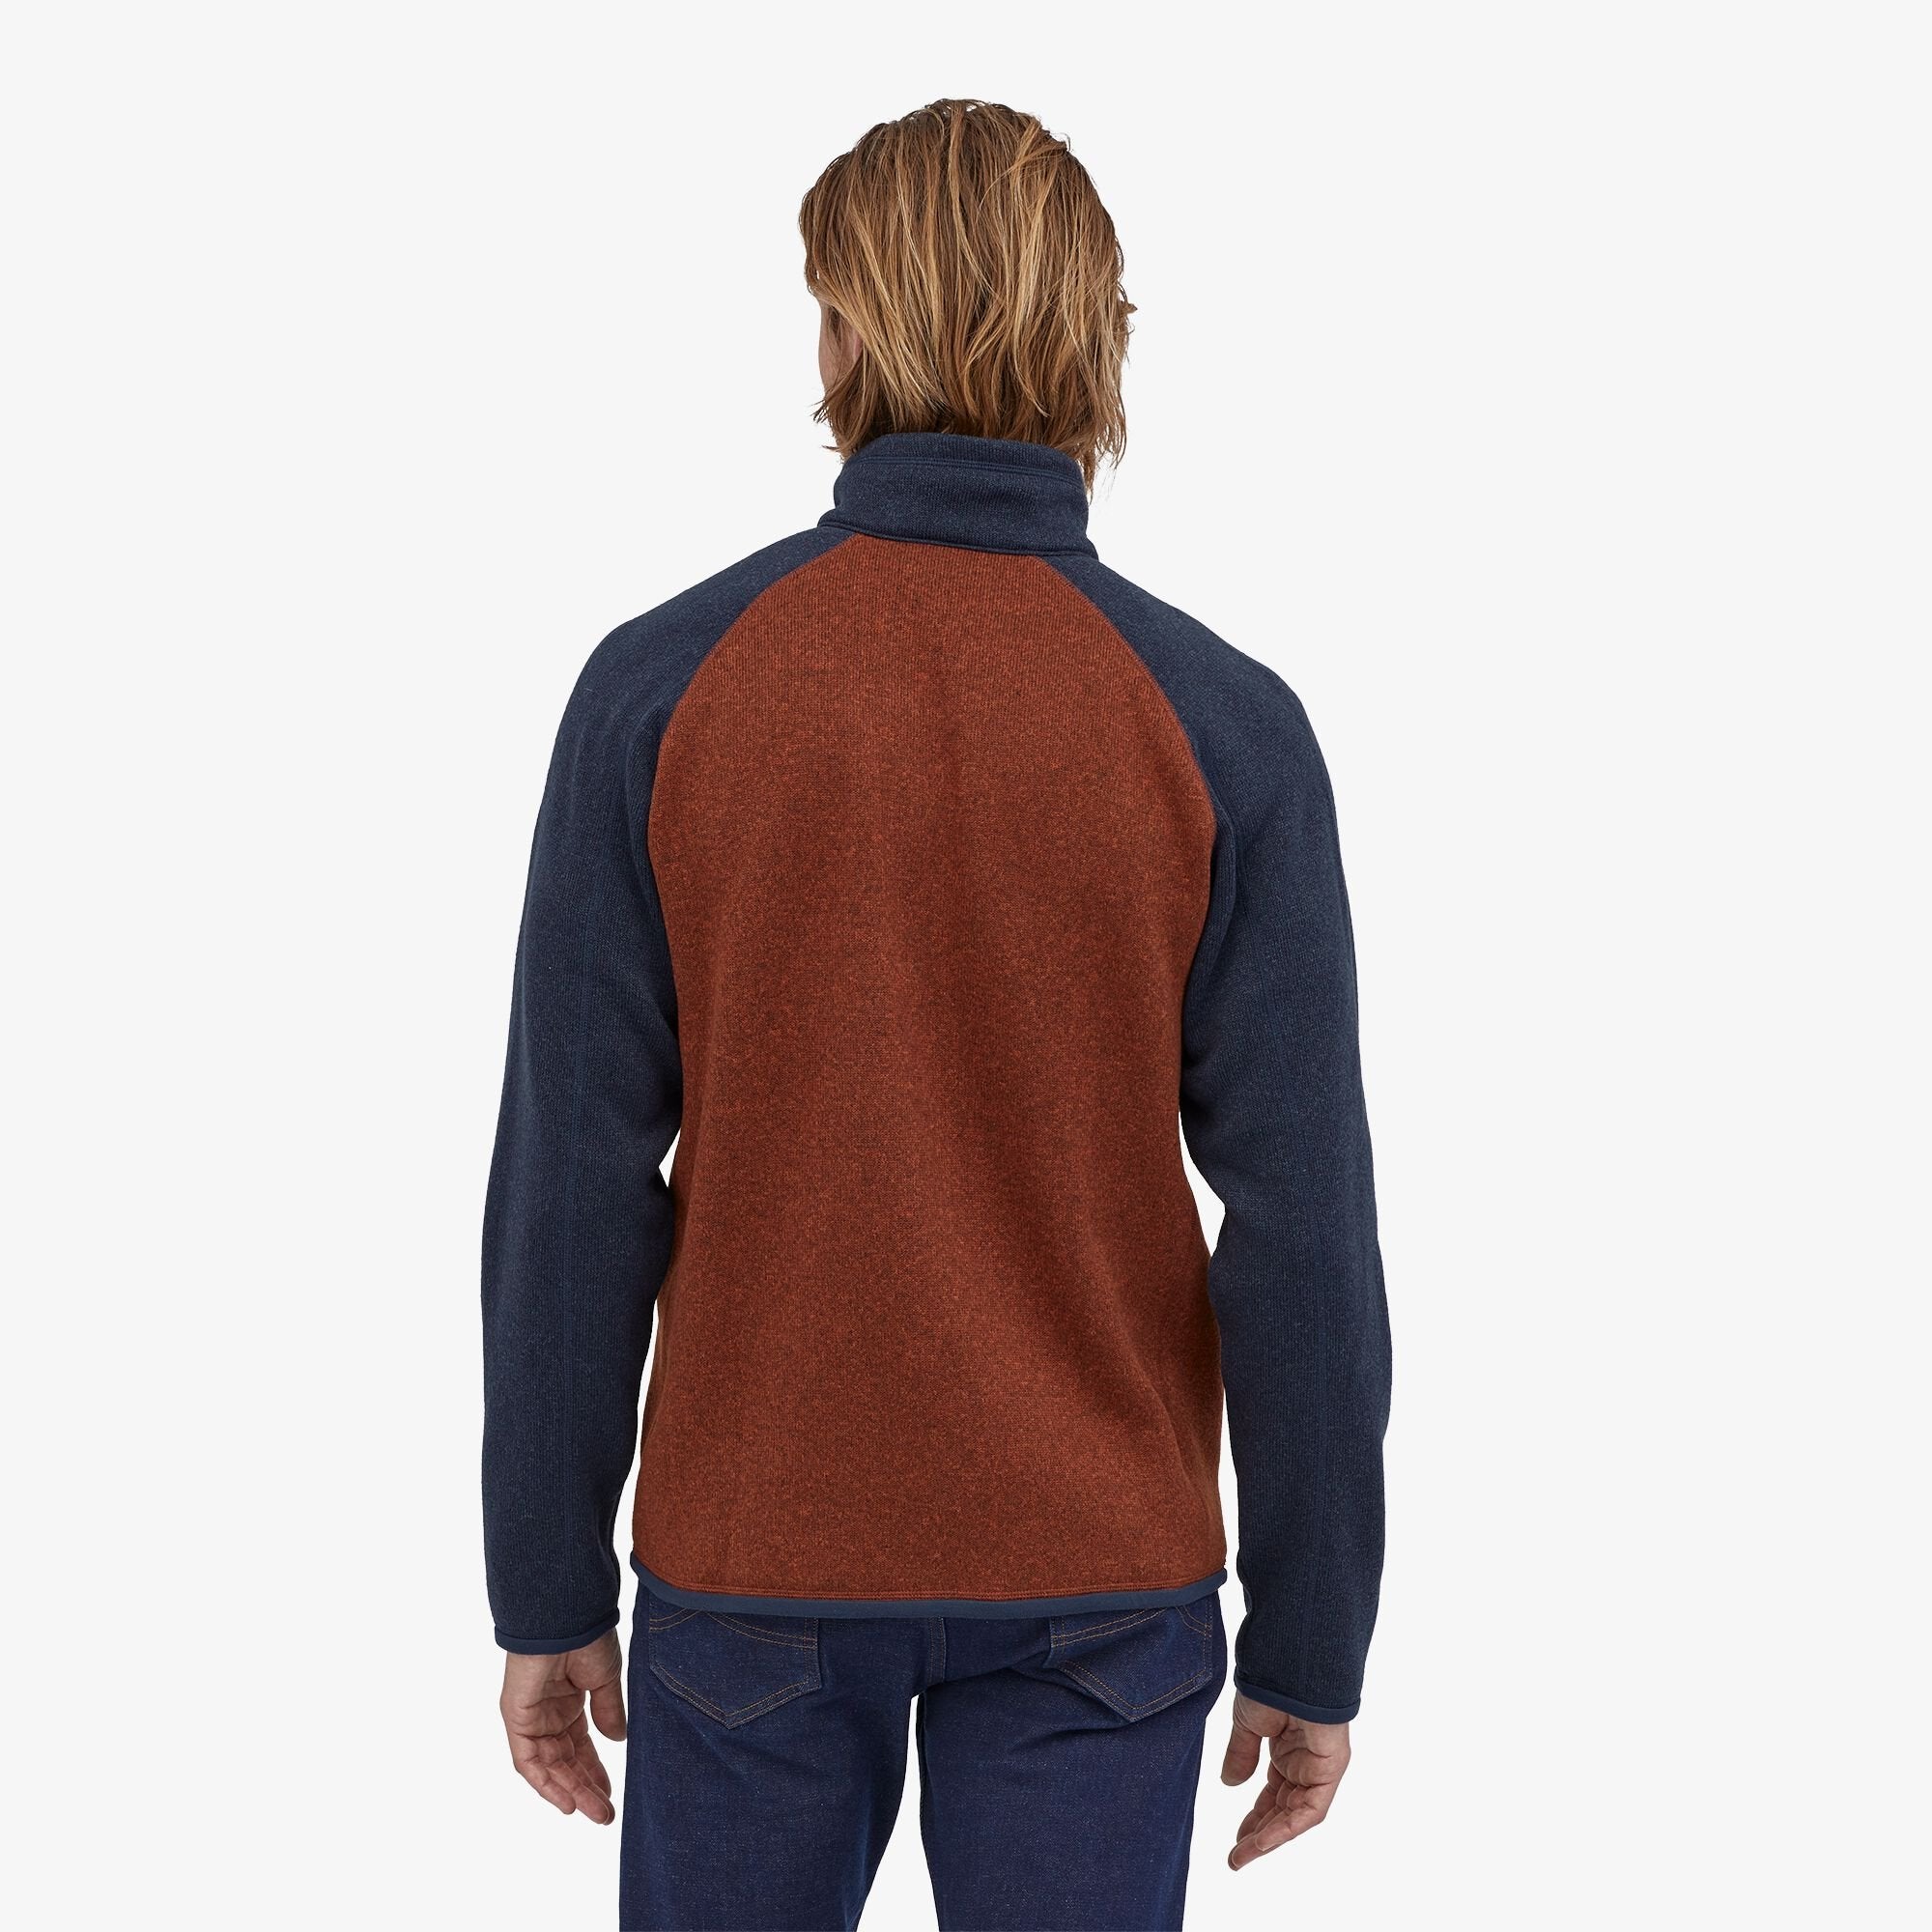 Better Sweater 1/4 Zip Fleece - Barn Red/New Navy